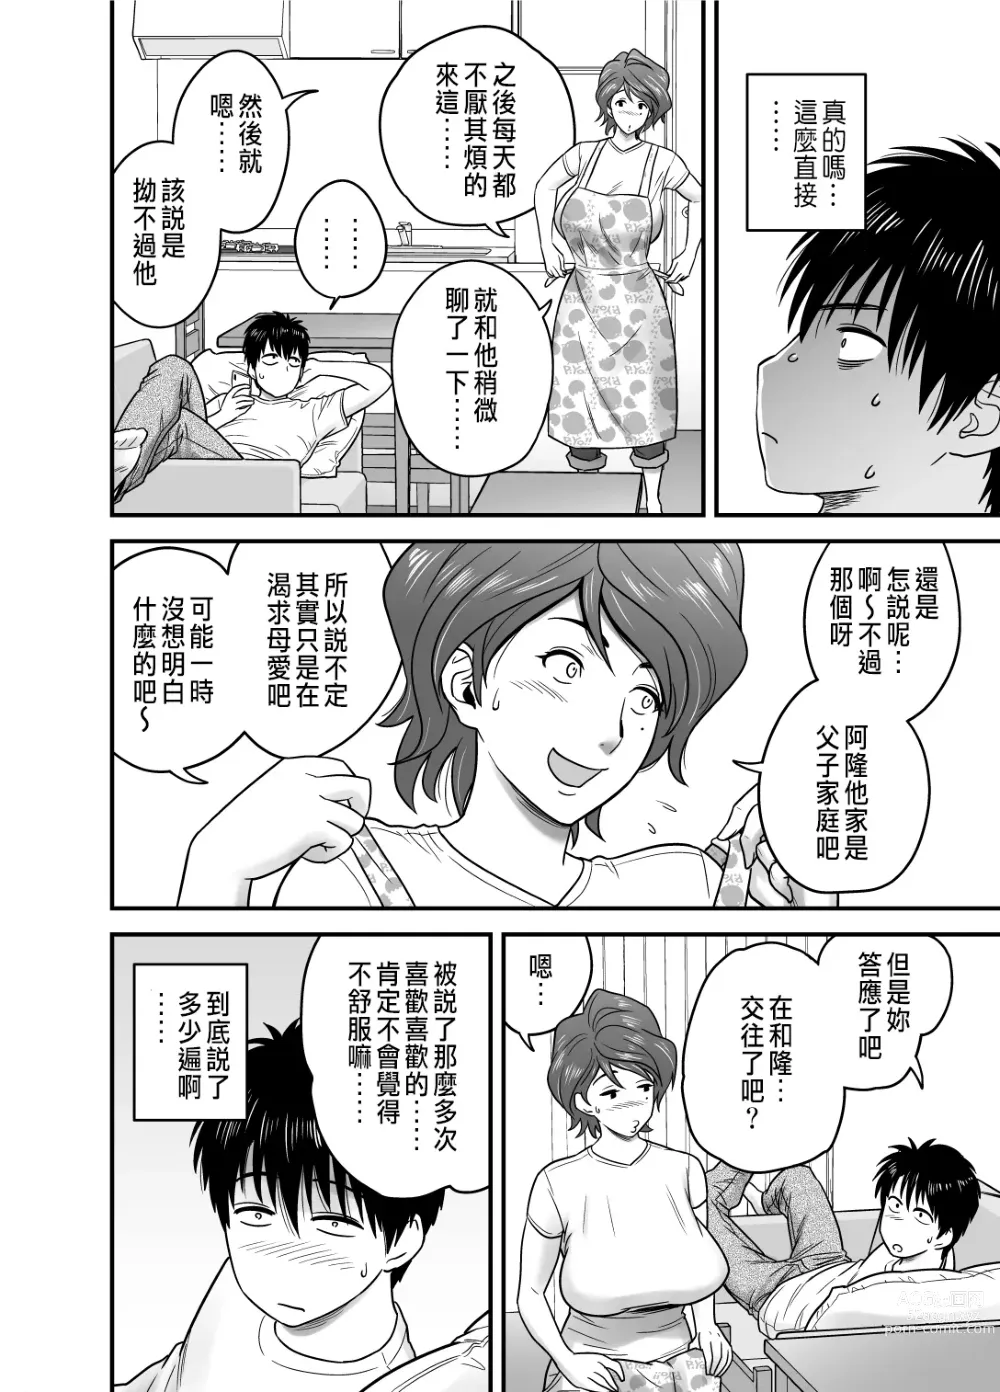 Page 10 of manga 母が友カノになったので